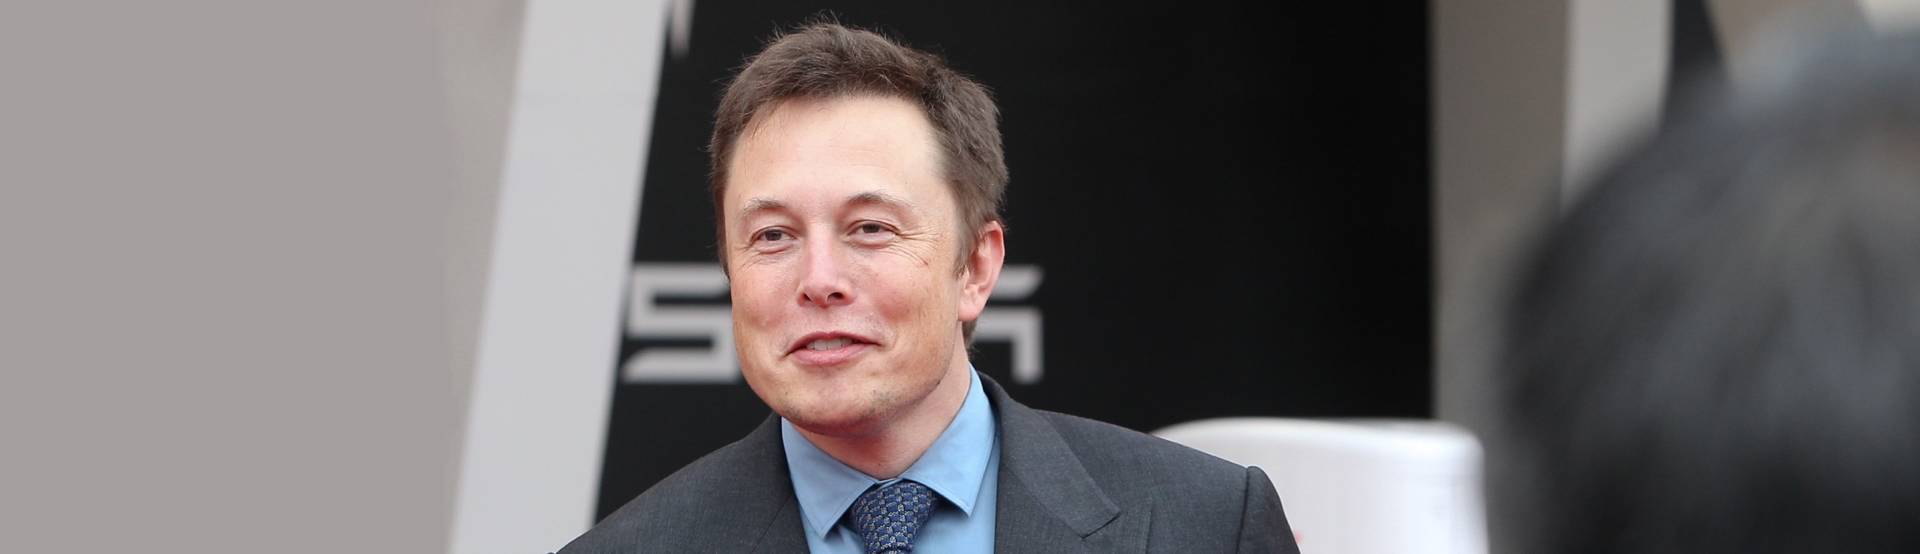 Elon Musk denuncia Open-AI e Sam Altman: Chat-GPT pensa solo al profitto